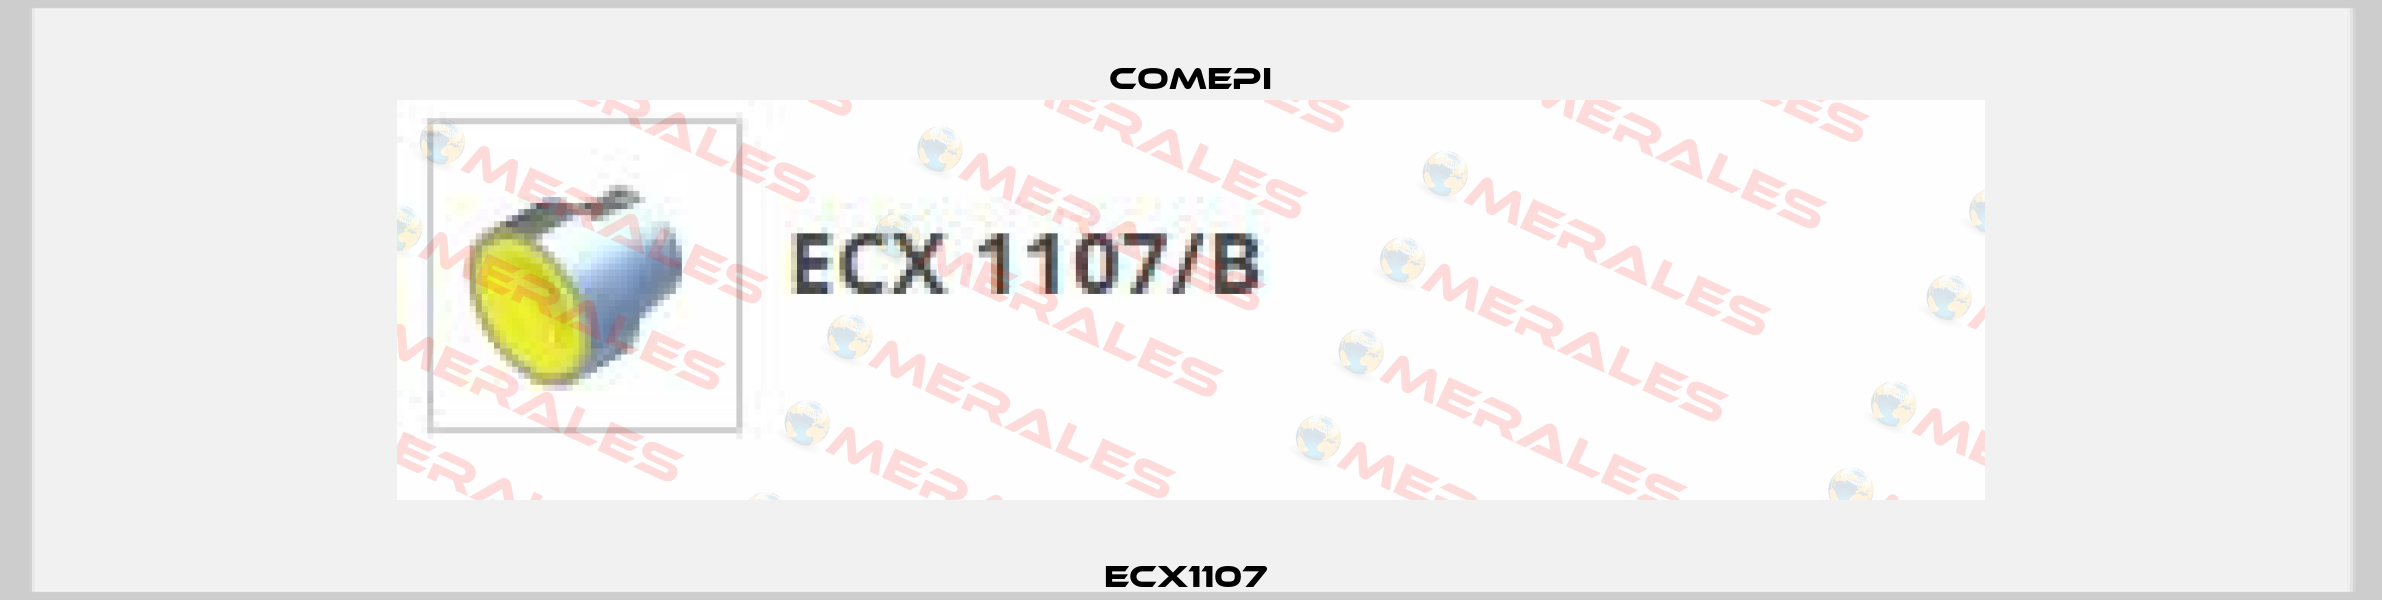 ECX1107  Comepi